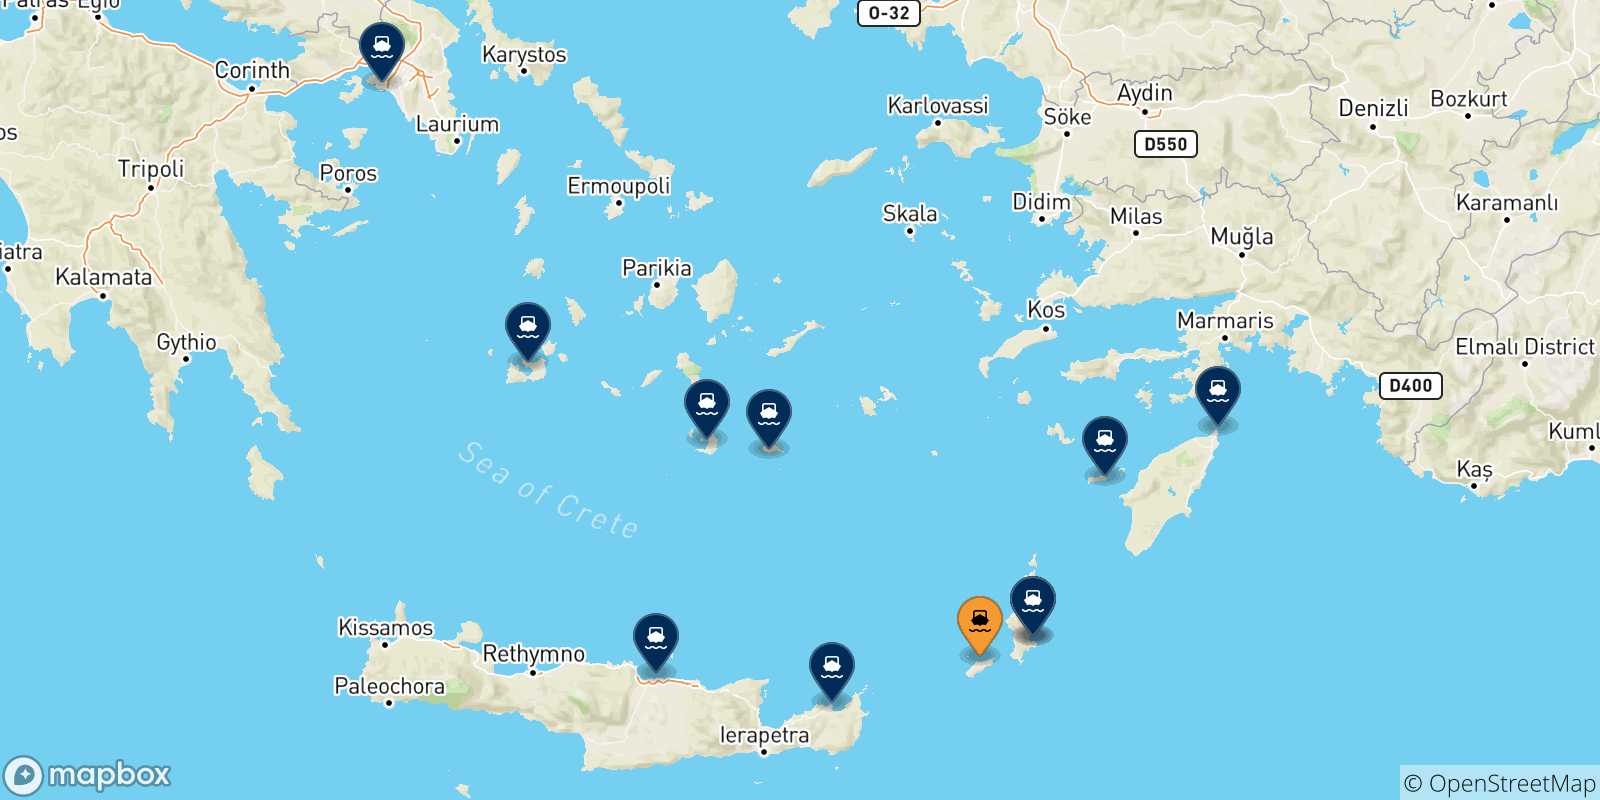 Mappa delle possibili rotte tra Kasos e la Grecia